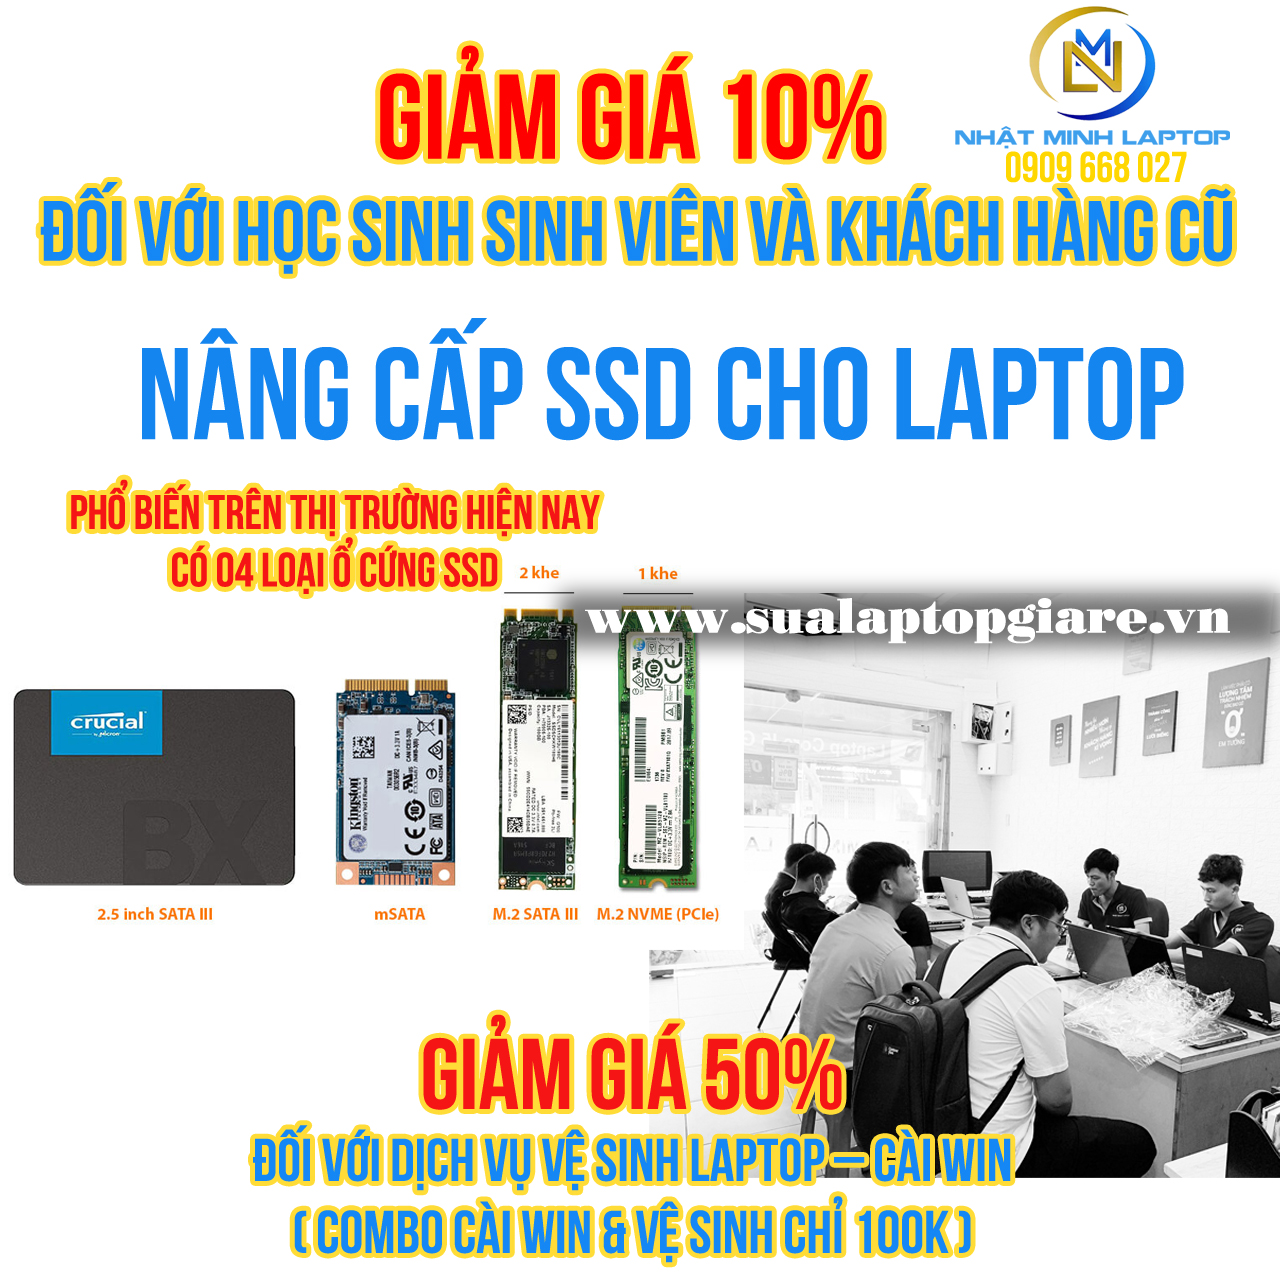 CHUYÊN NÂNG CẤP Ổ CỨNG SSD, HDD CHO LAPTOP